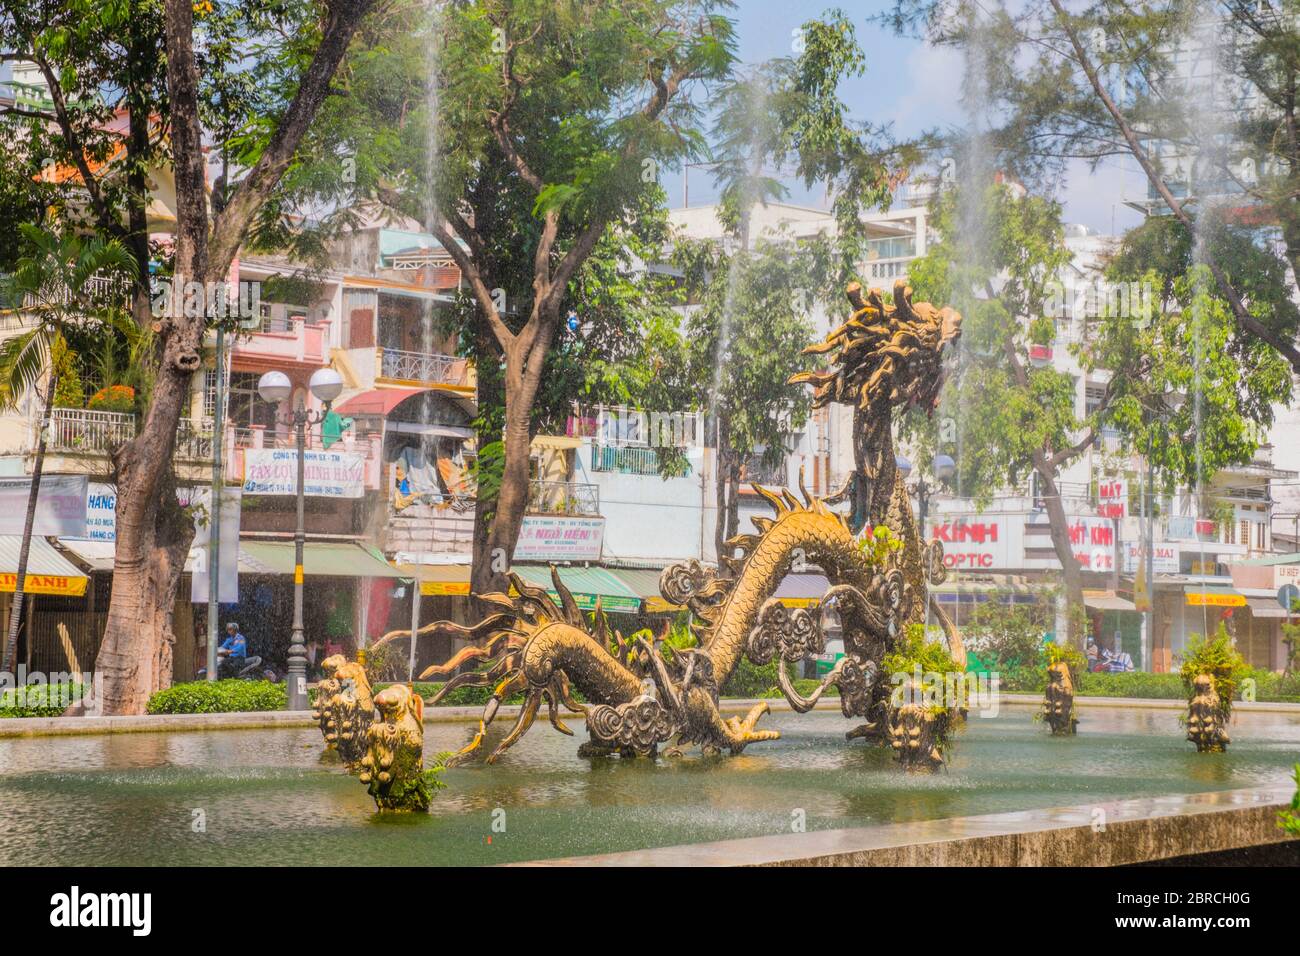 Cong vien Cuu long, parc avec fontaine de dragon, Cholon, Ho Chi Minh ville, Vietnam, Asie Banque D'Images